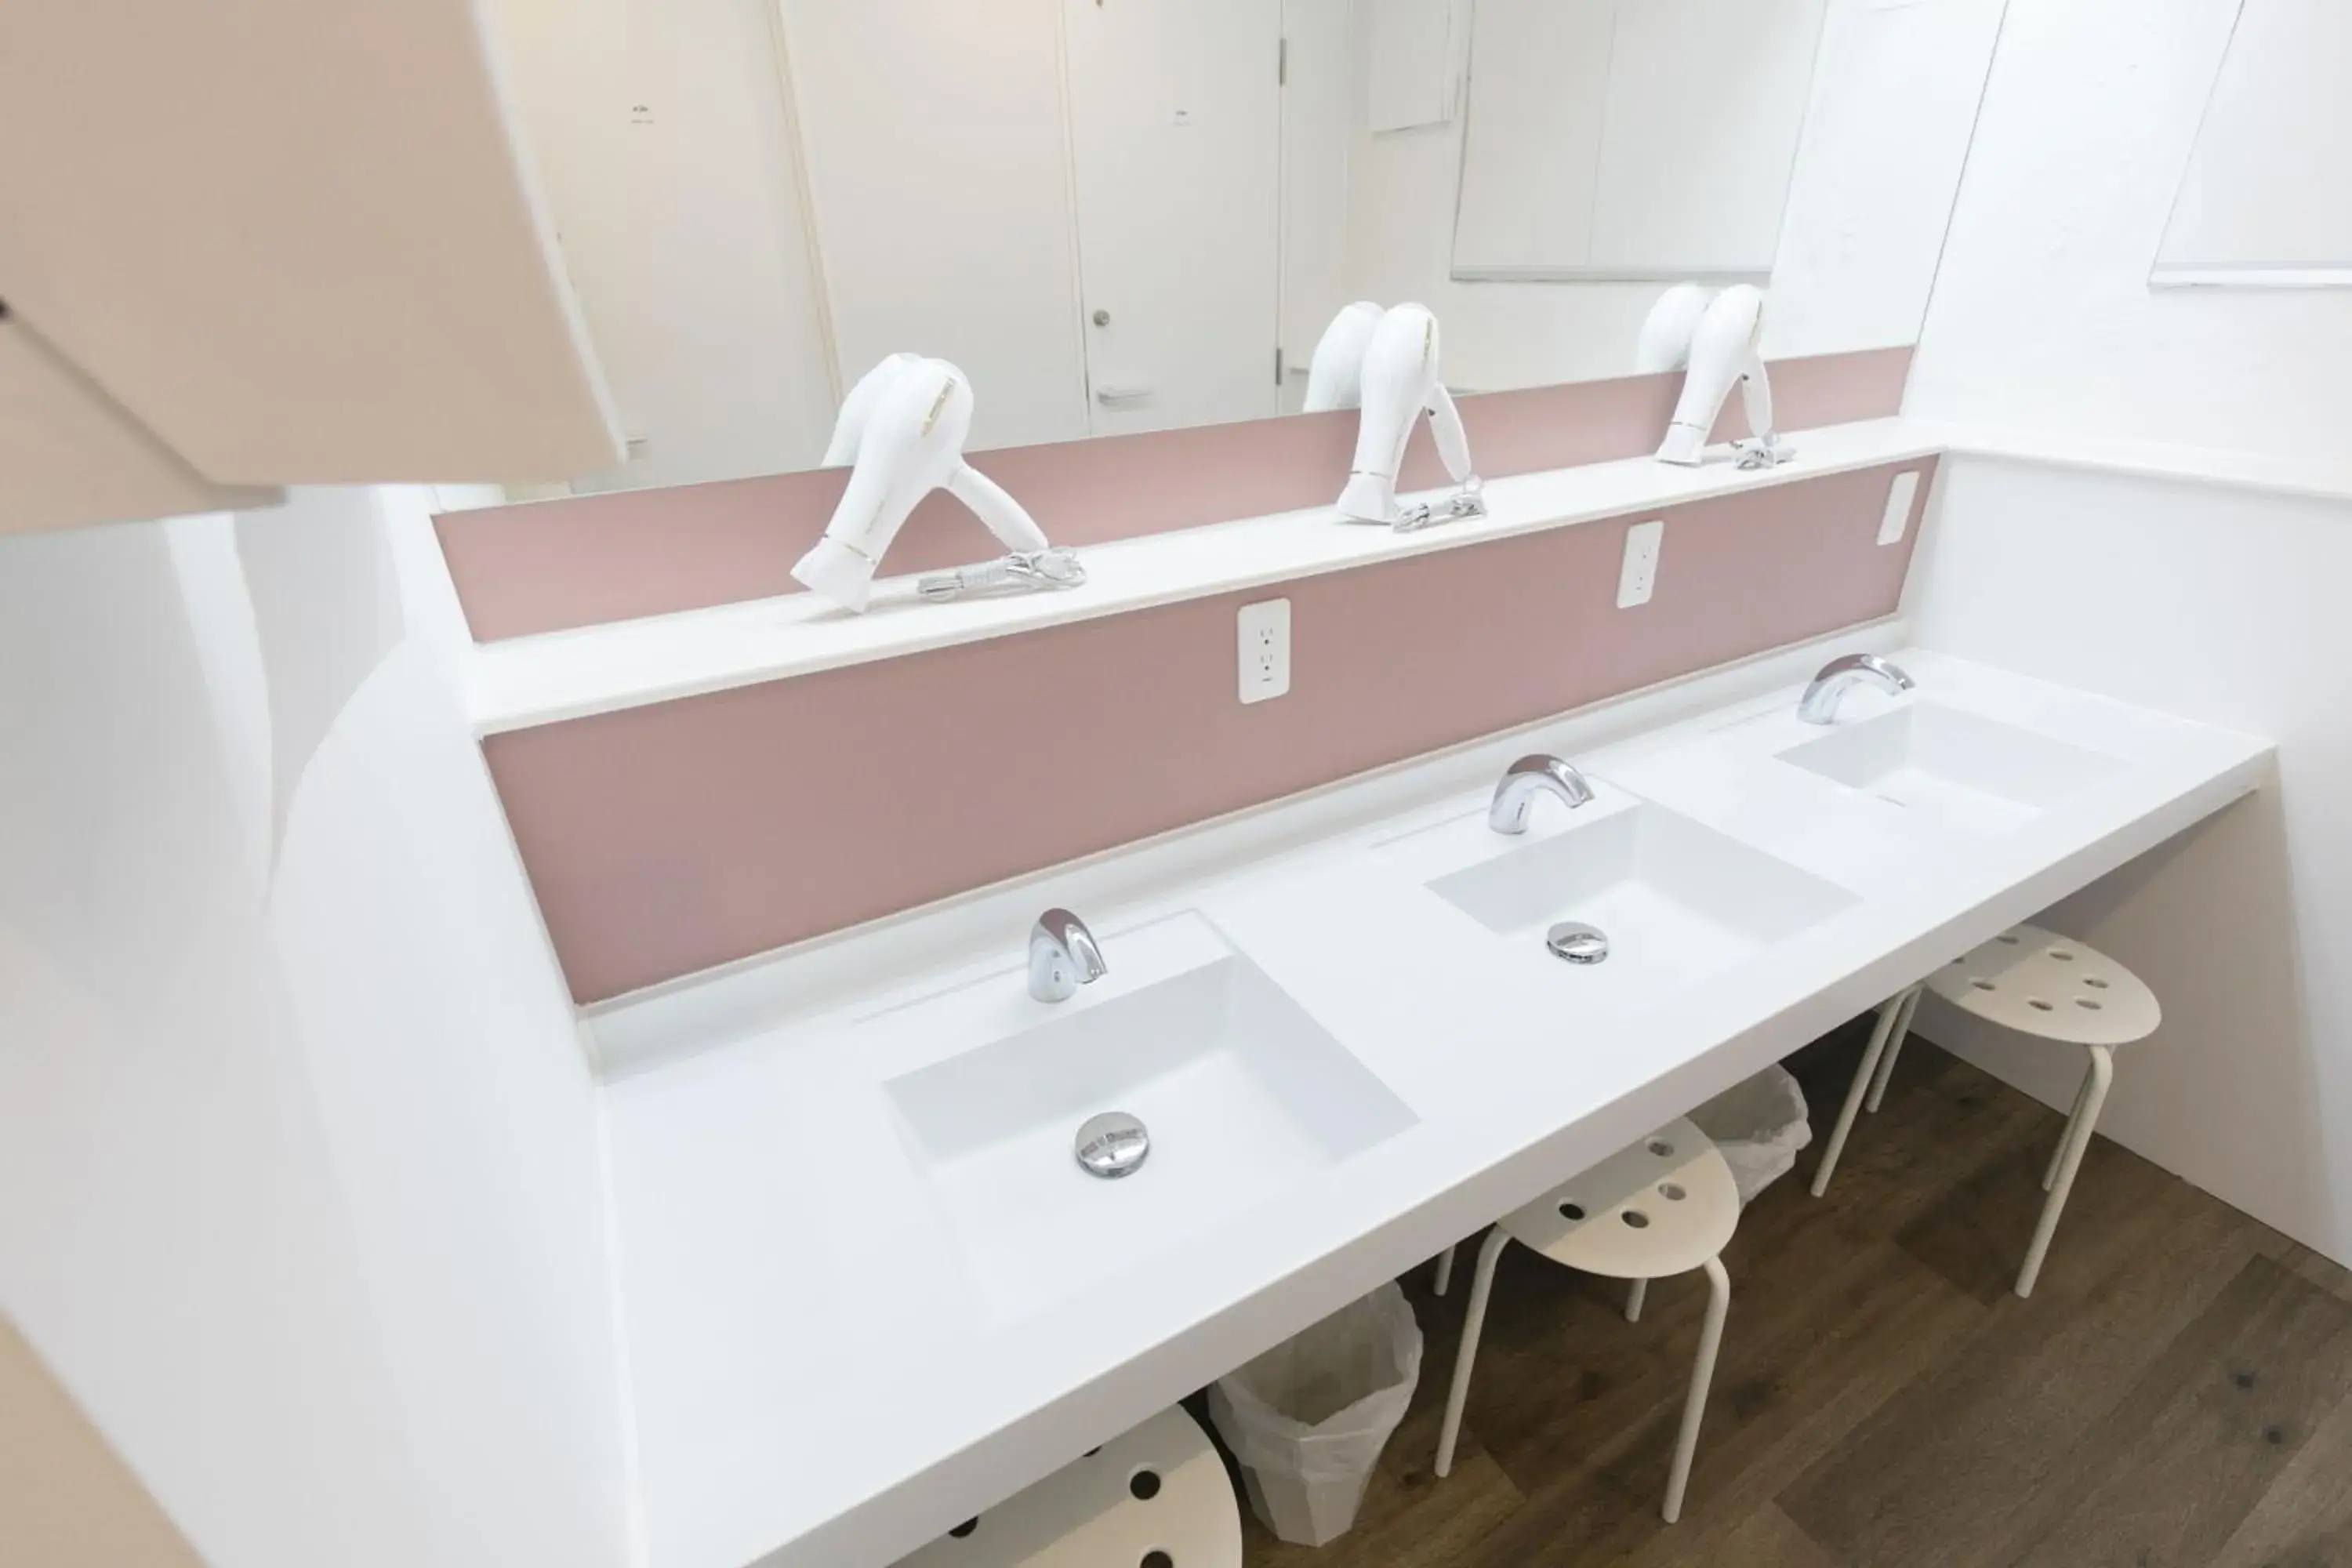 Area and facilities, Bathroom in hostel DEN